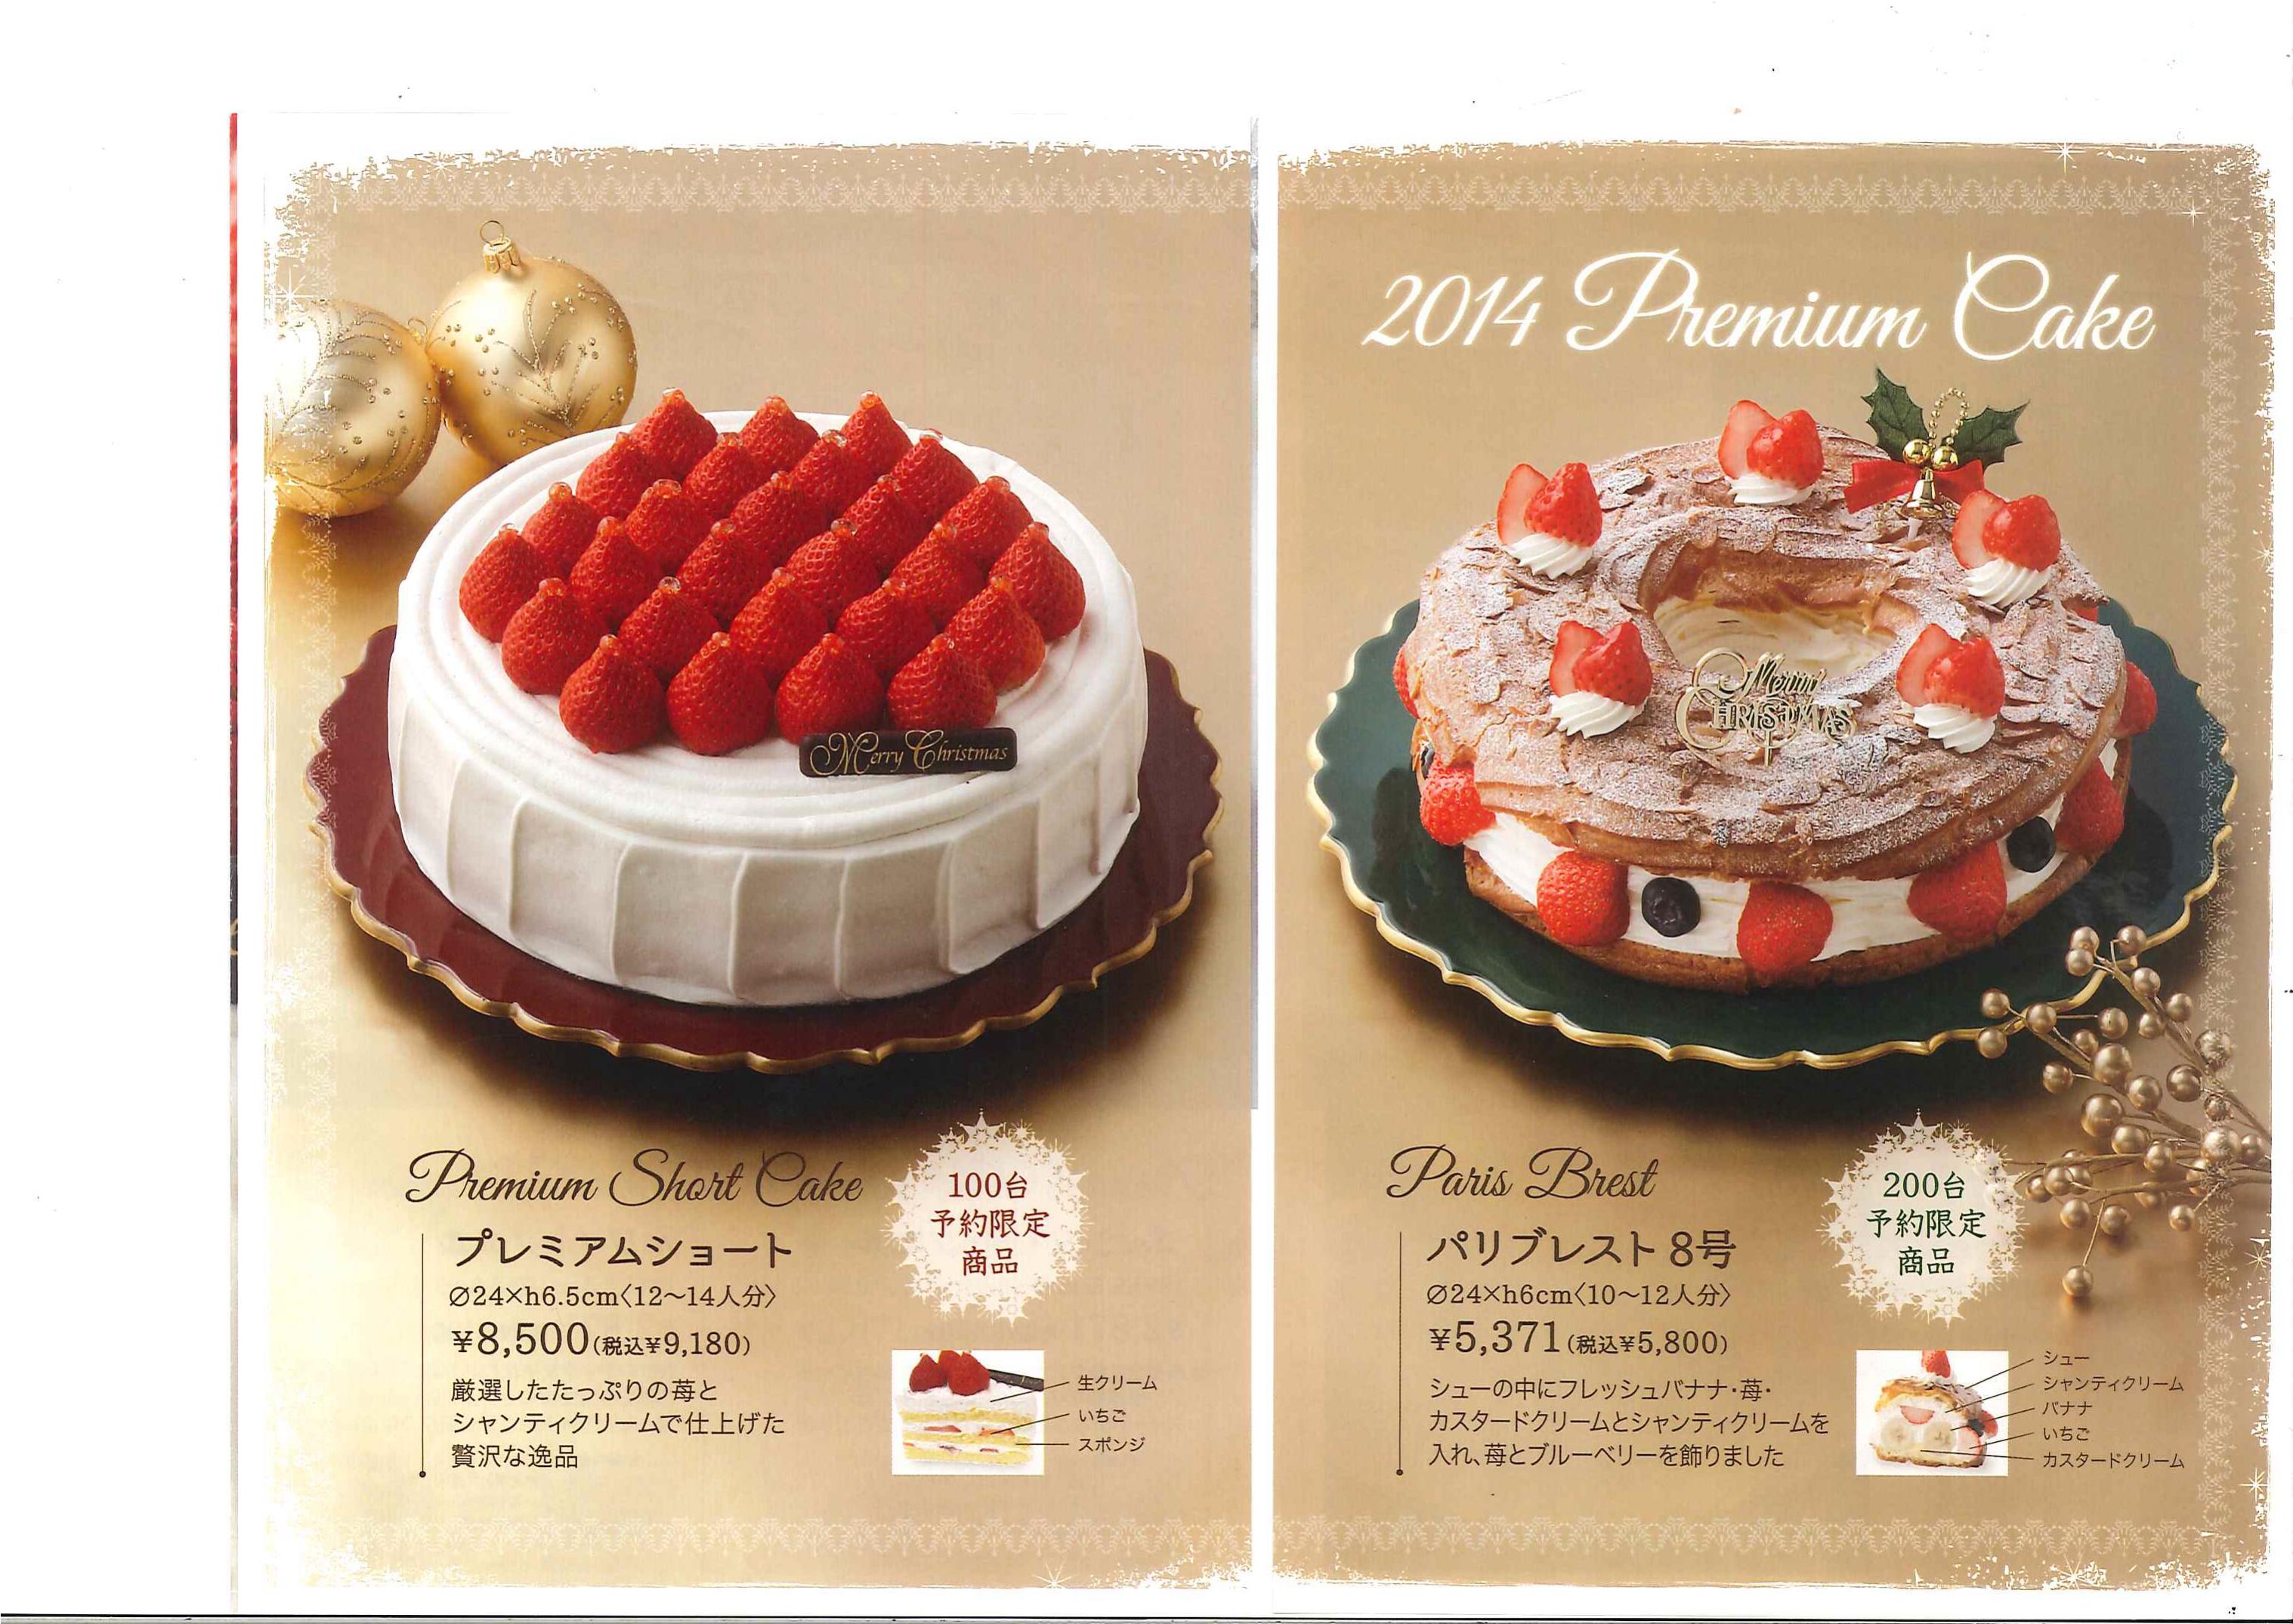 クリスマスケーキの特別割引販売のお知らせ 三栄メンテナンス株式会社ブログ